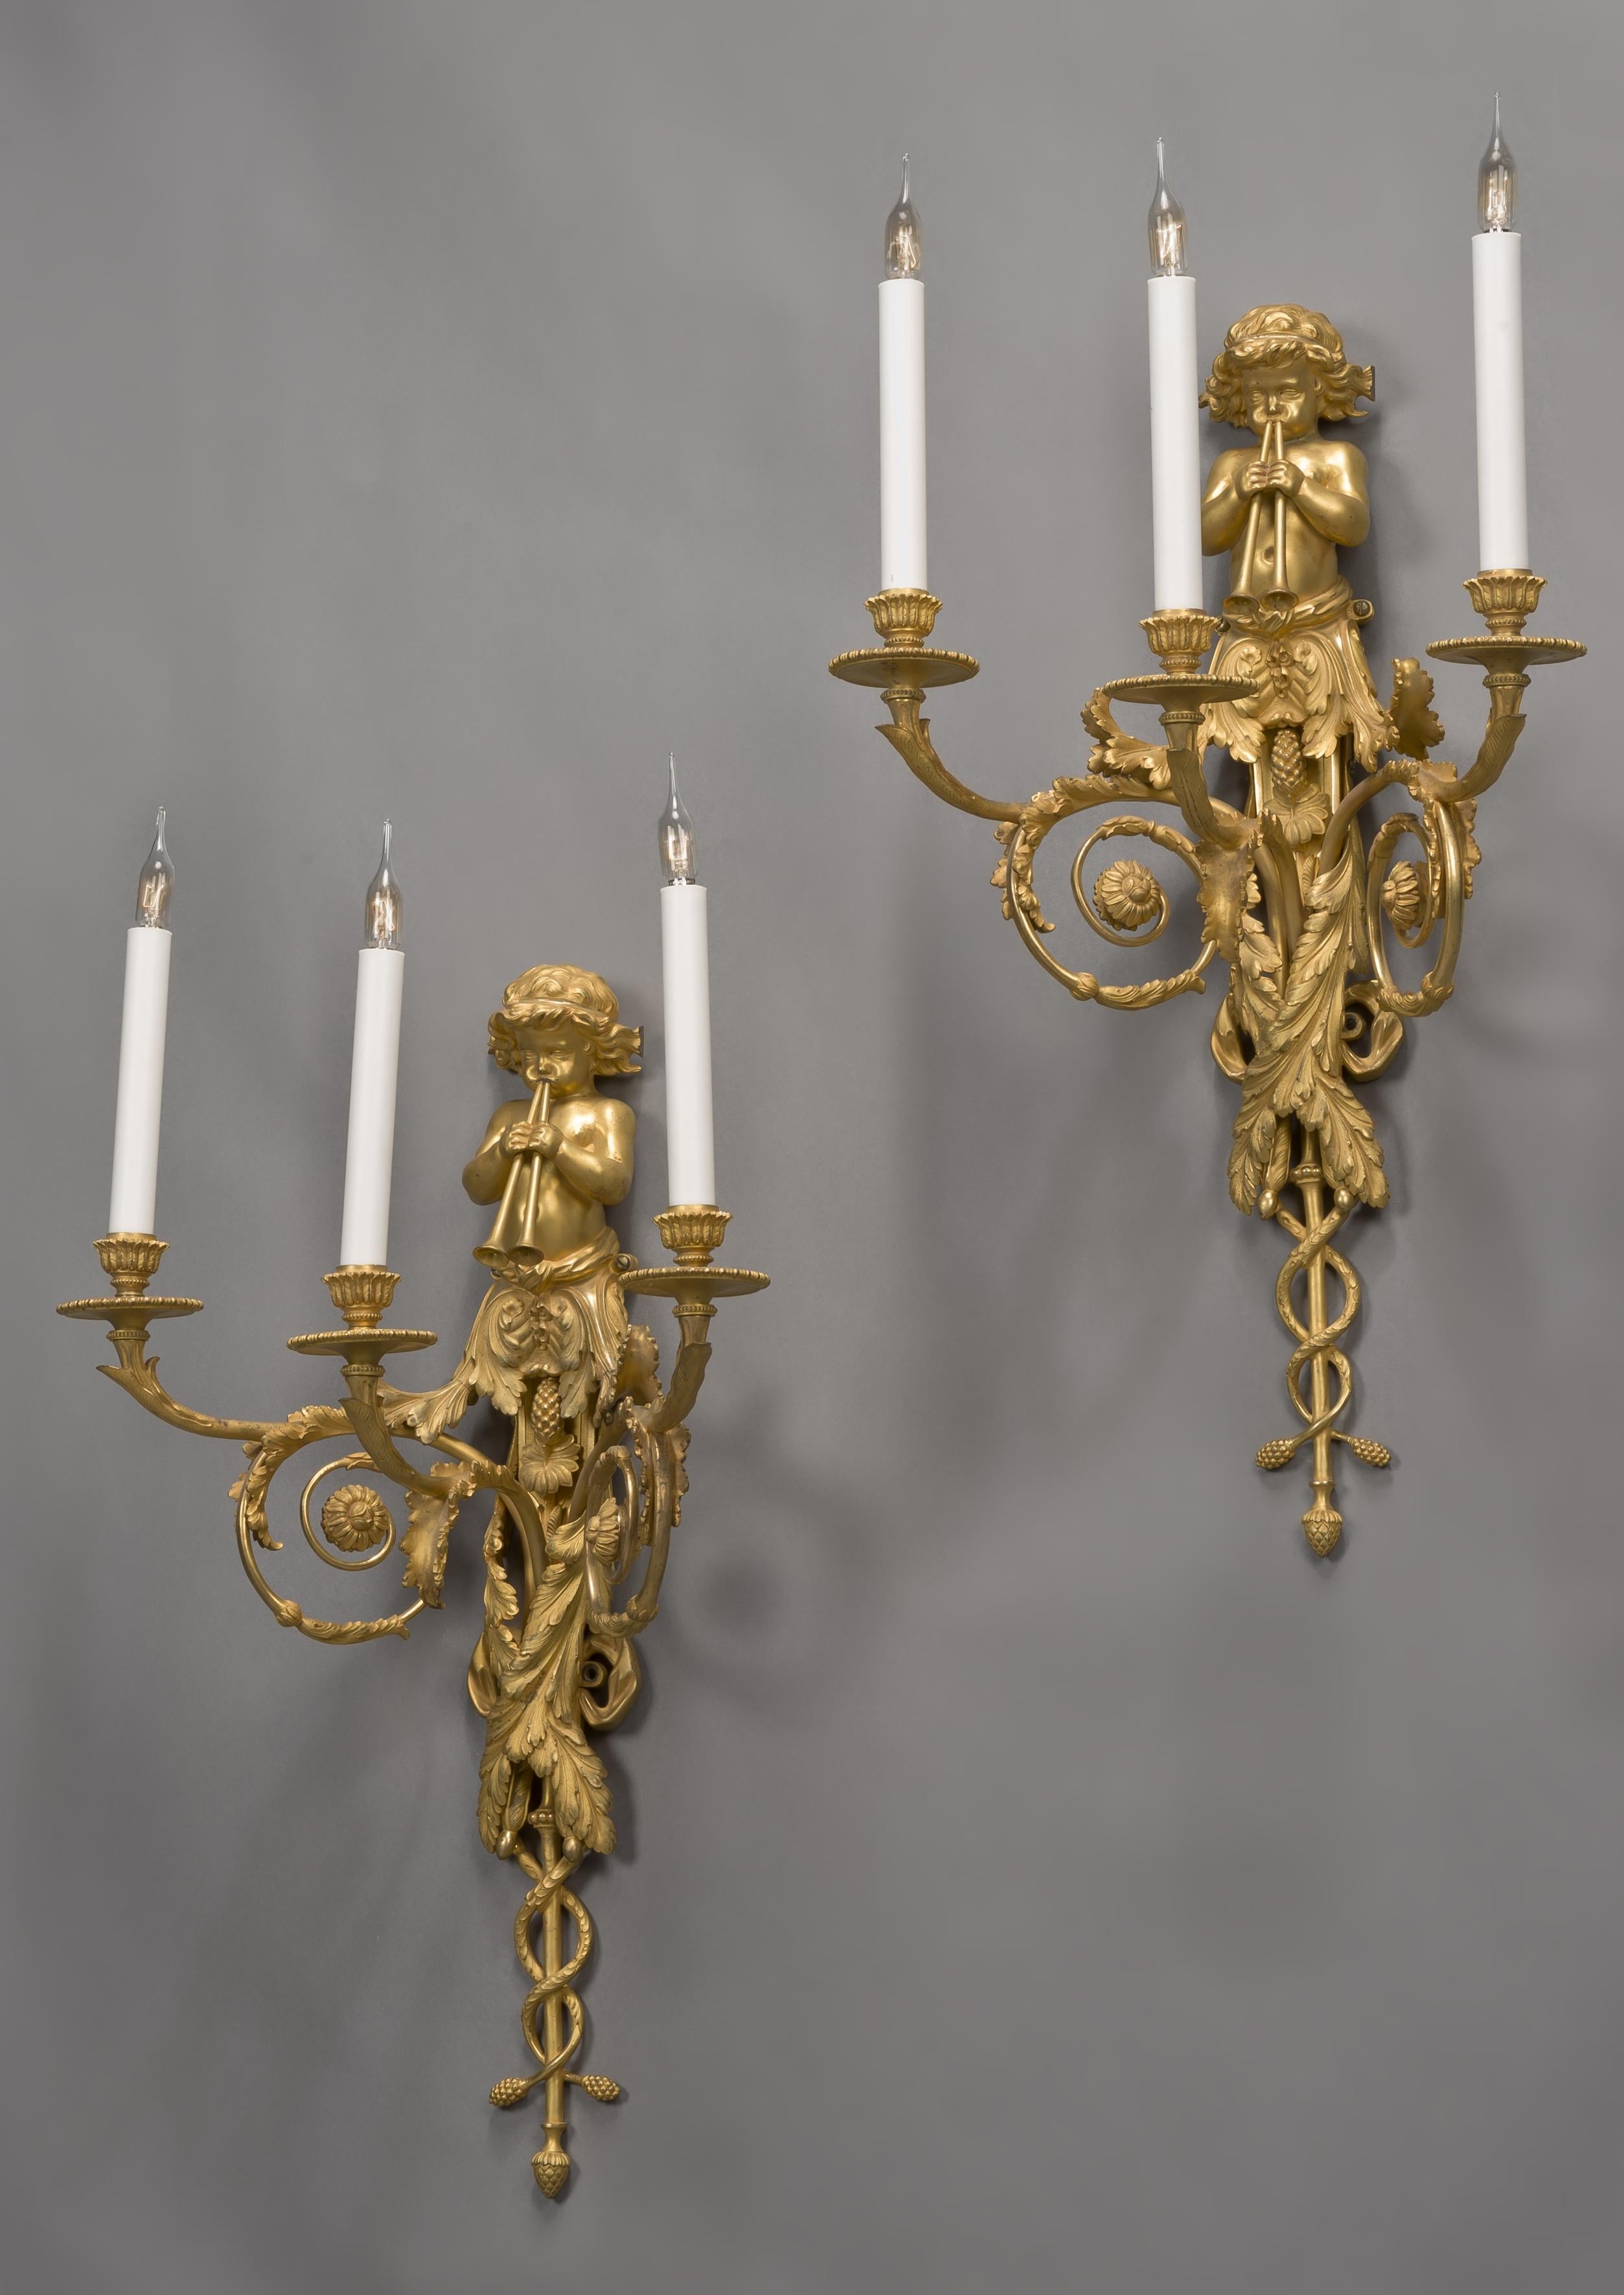 Ein feines Paar vergoldeter Bronze-Wandlampen im Stil Ludwigs XVI. nach einem Entwurf von Jean Hauré für das Château de St. Cloud.

Frankreich, um 1890. 

Jede Applique hat eine Rückwand mit drei Akanthusarmen, die in vasenförmigen Leuchtern und